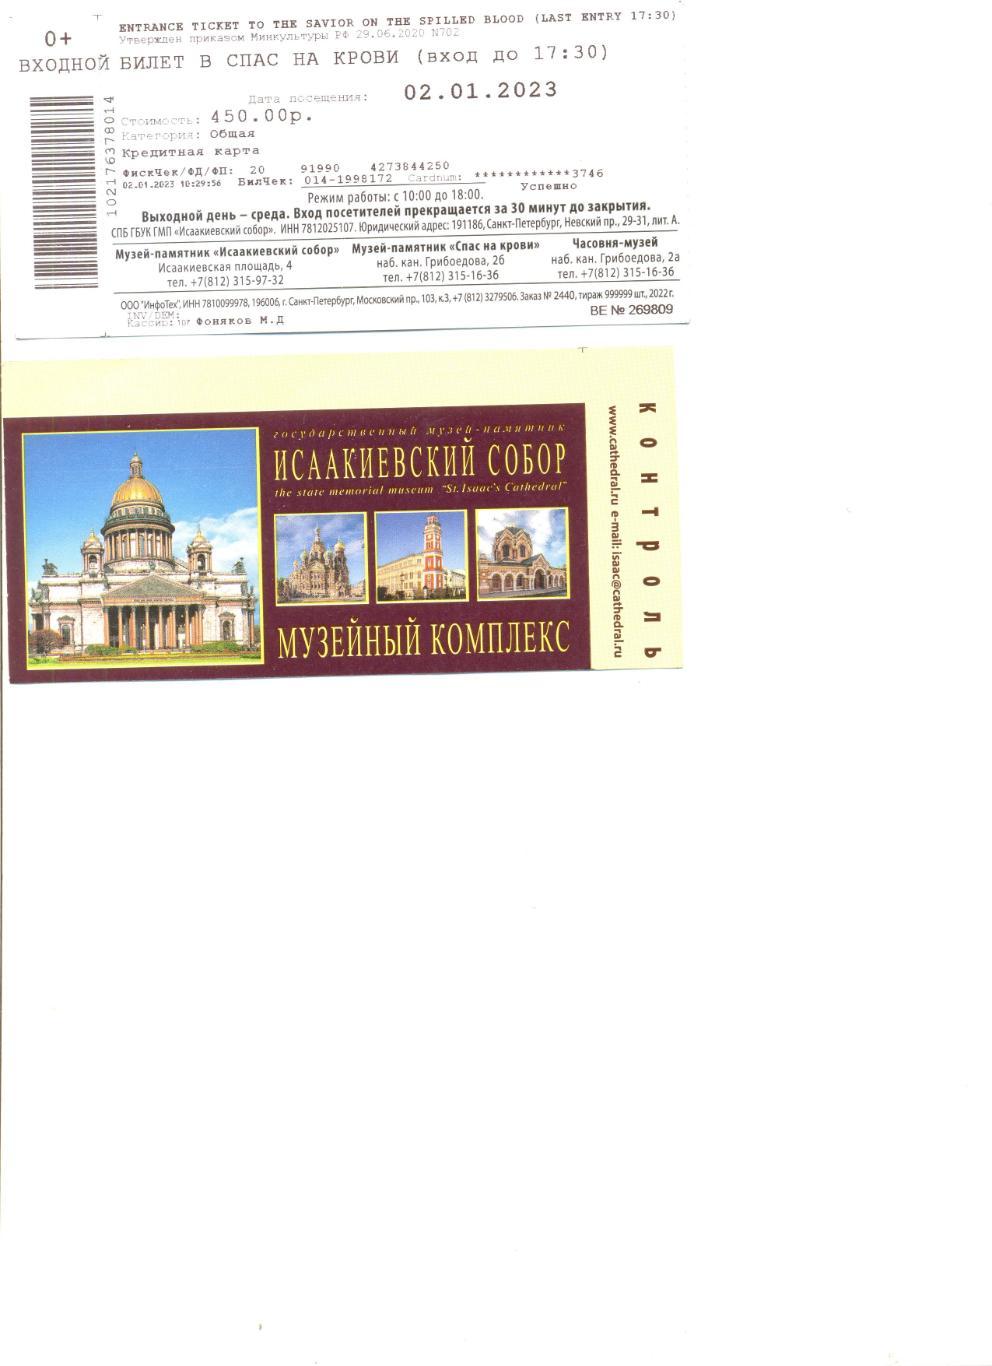 Билет входной в храм Спаса на крови в Санкт-Петербурге.